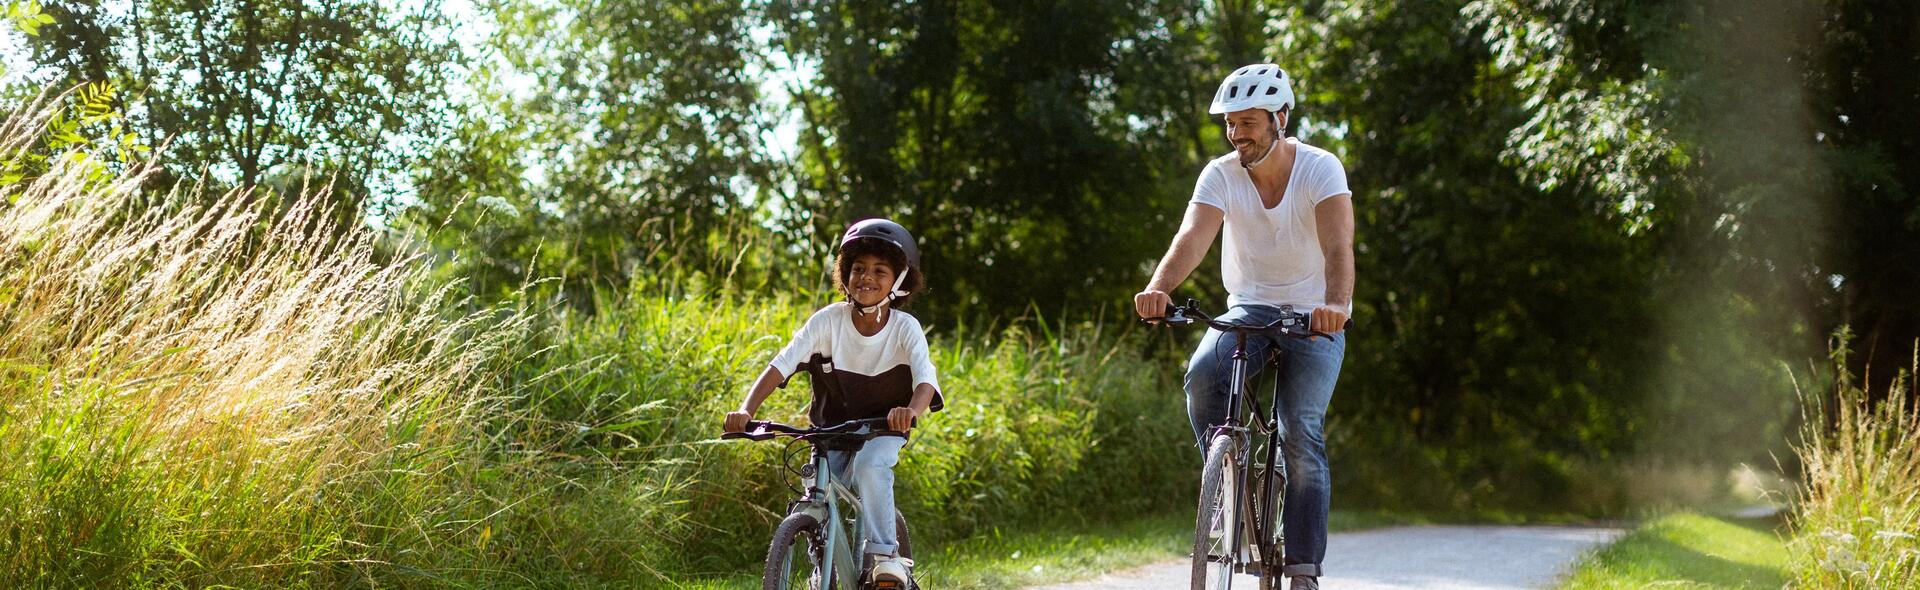 mężczyzna i dziecko jadą na rowerach w kaskach